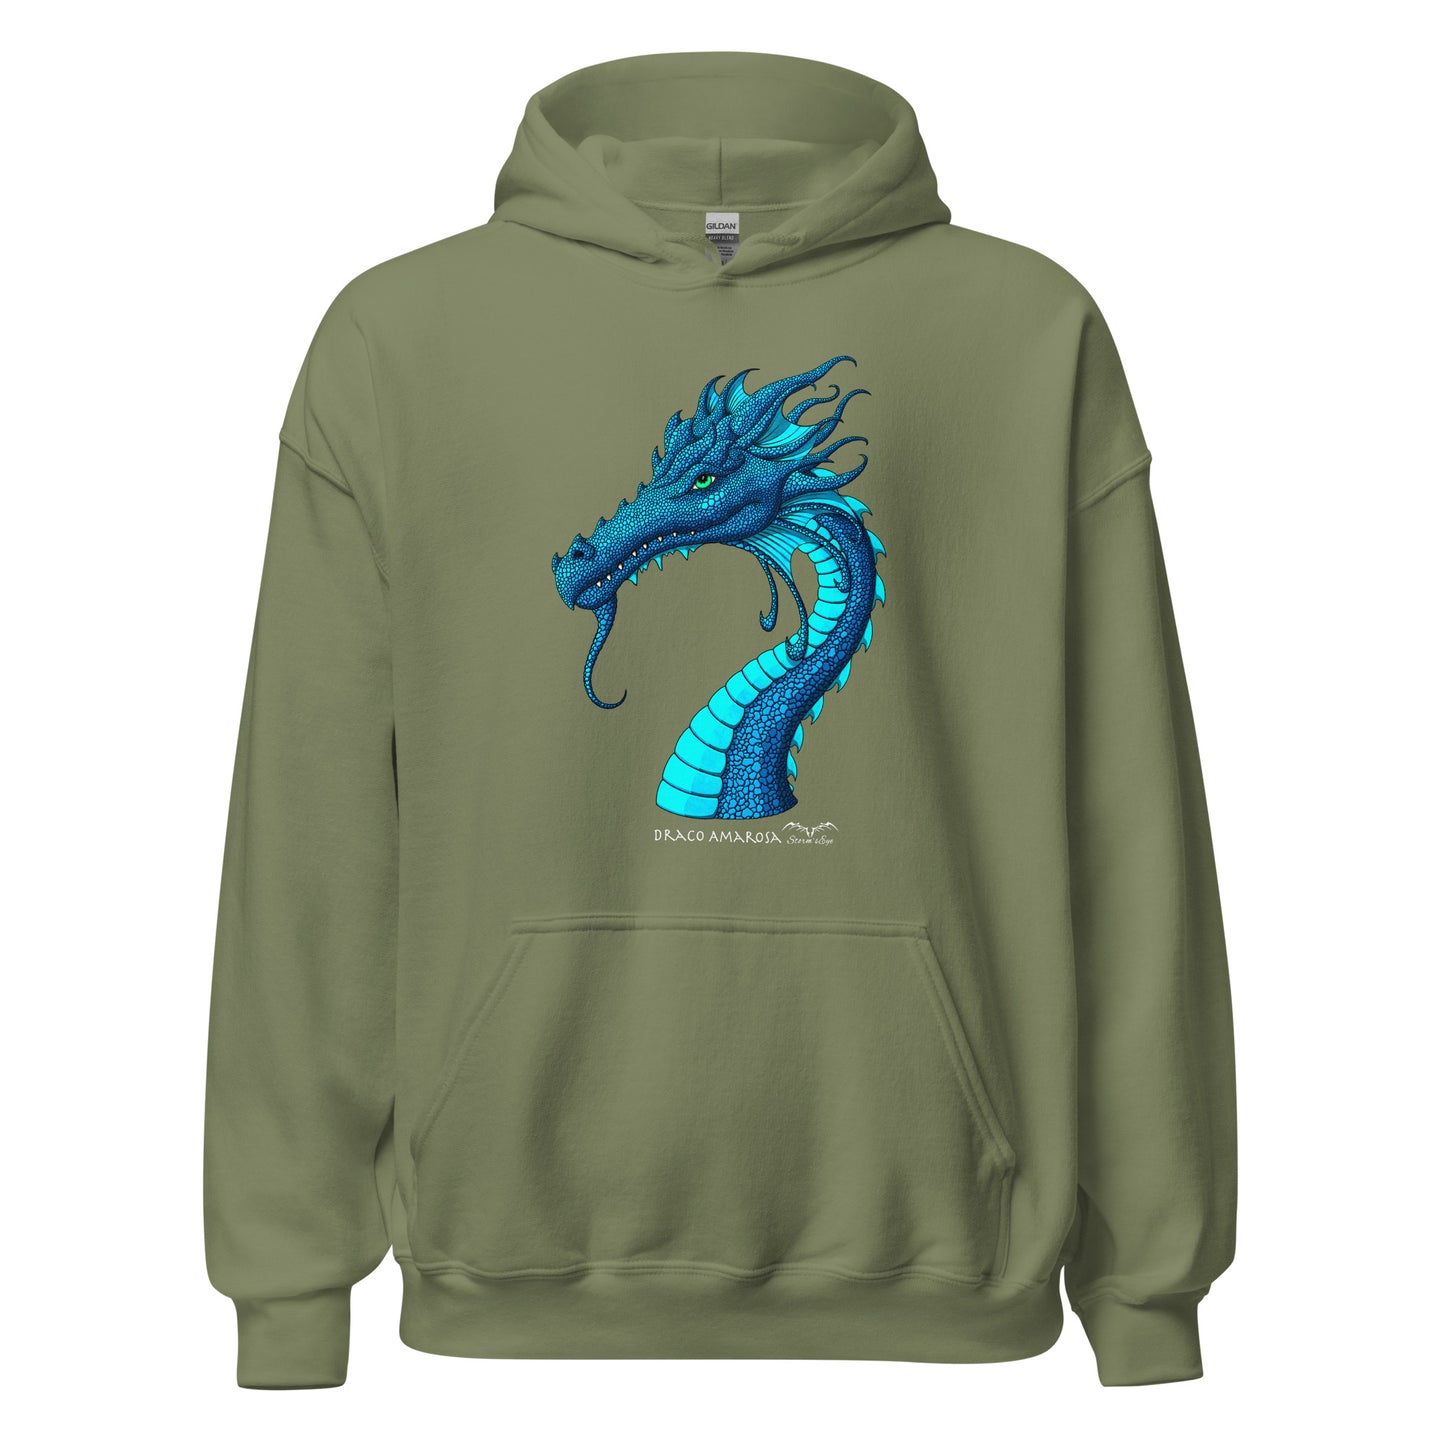 amarosa dragon fantasy hoodie army green by stormseye design